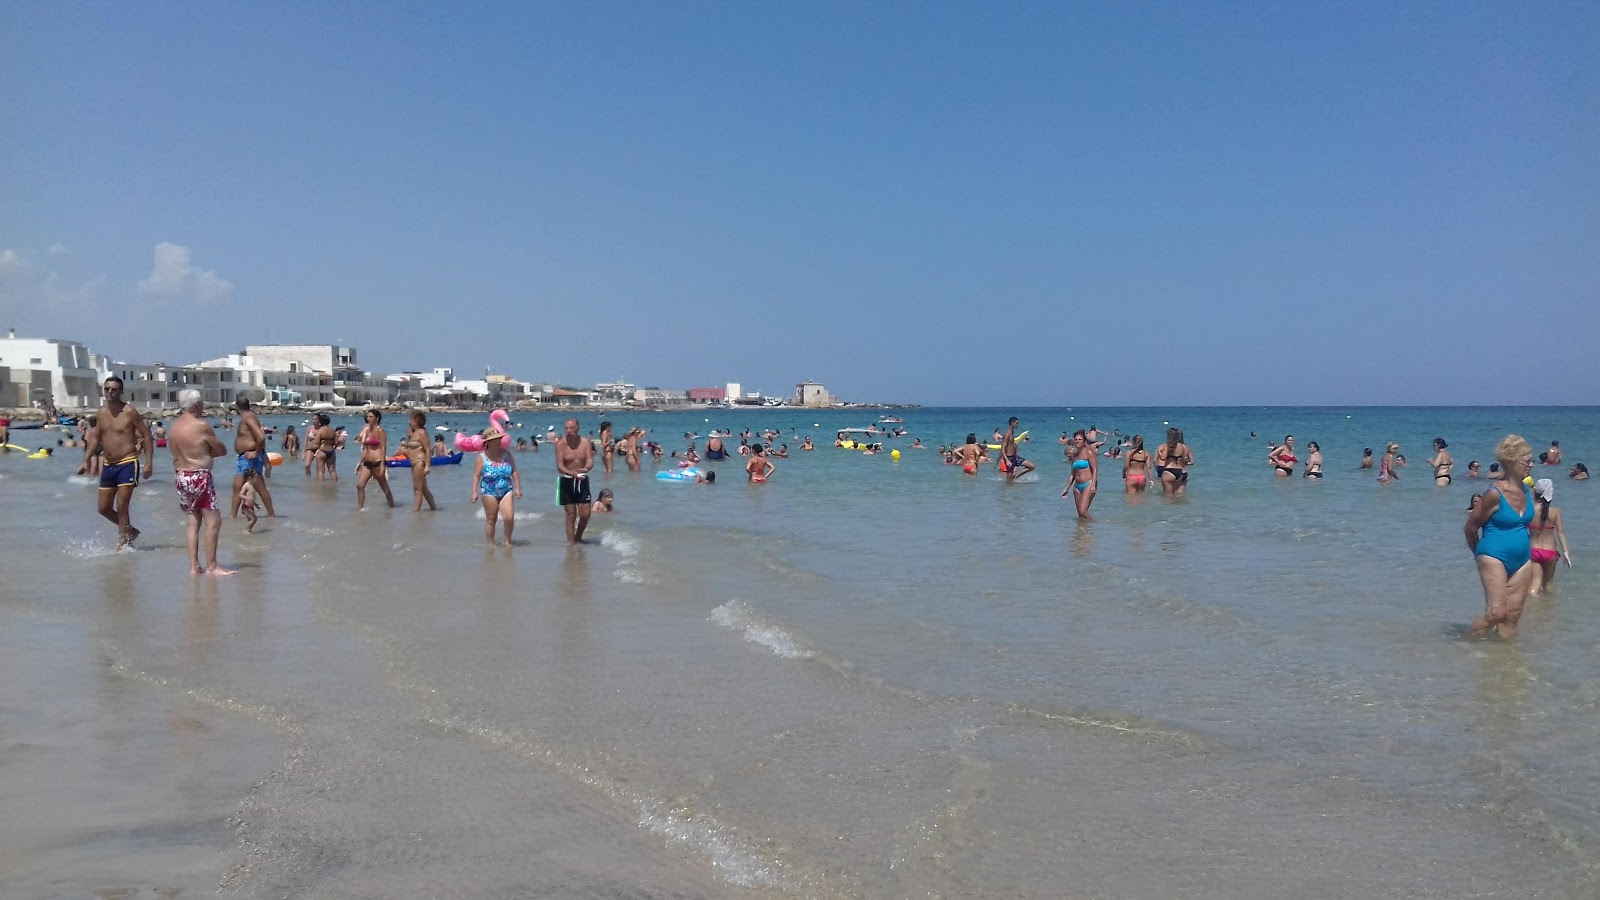 Casalabate beach'in fotoğrafı geniş plaj ile birlikte